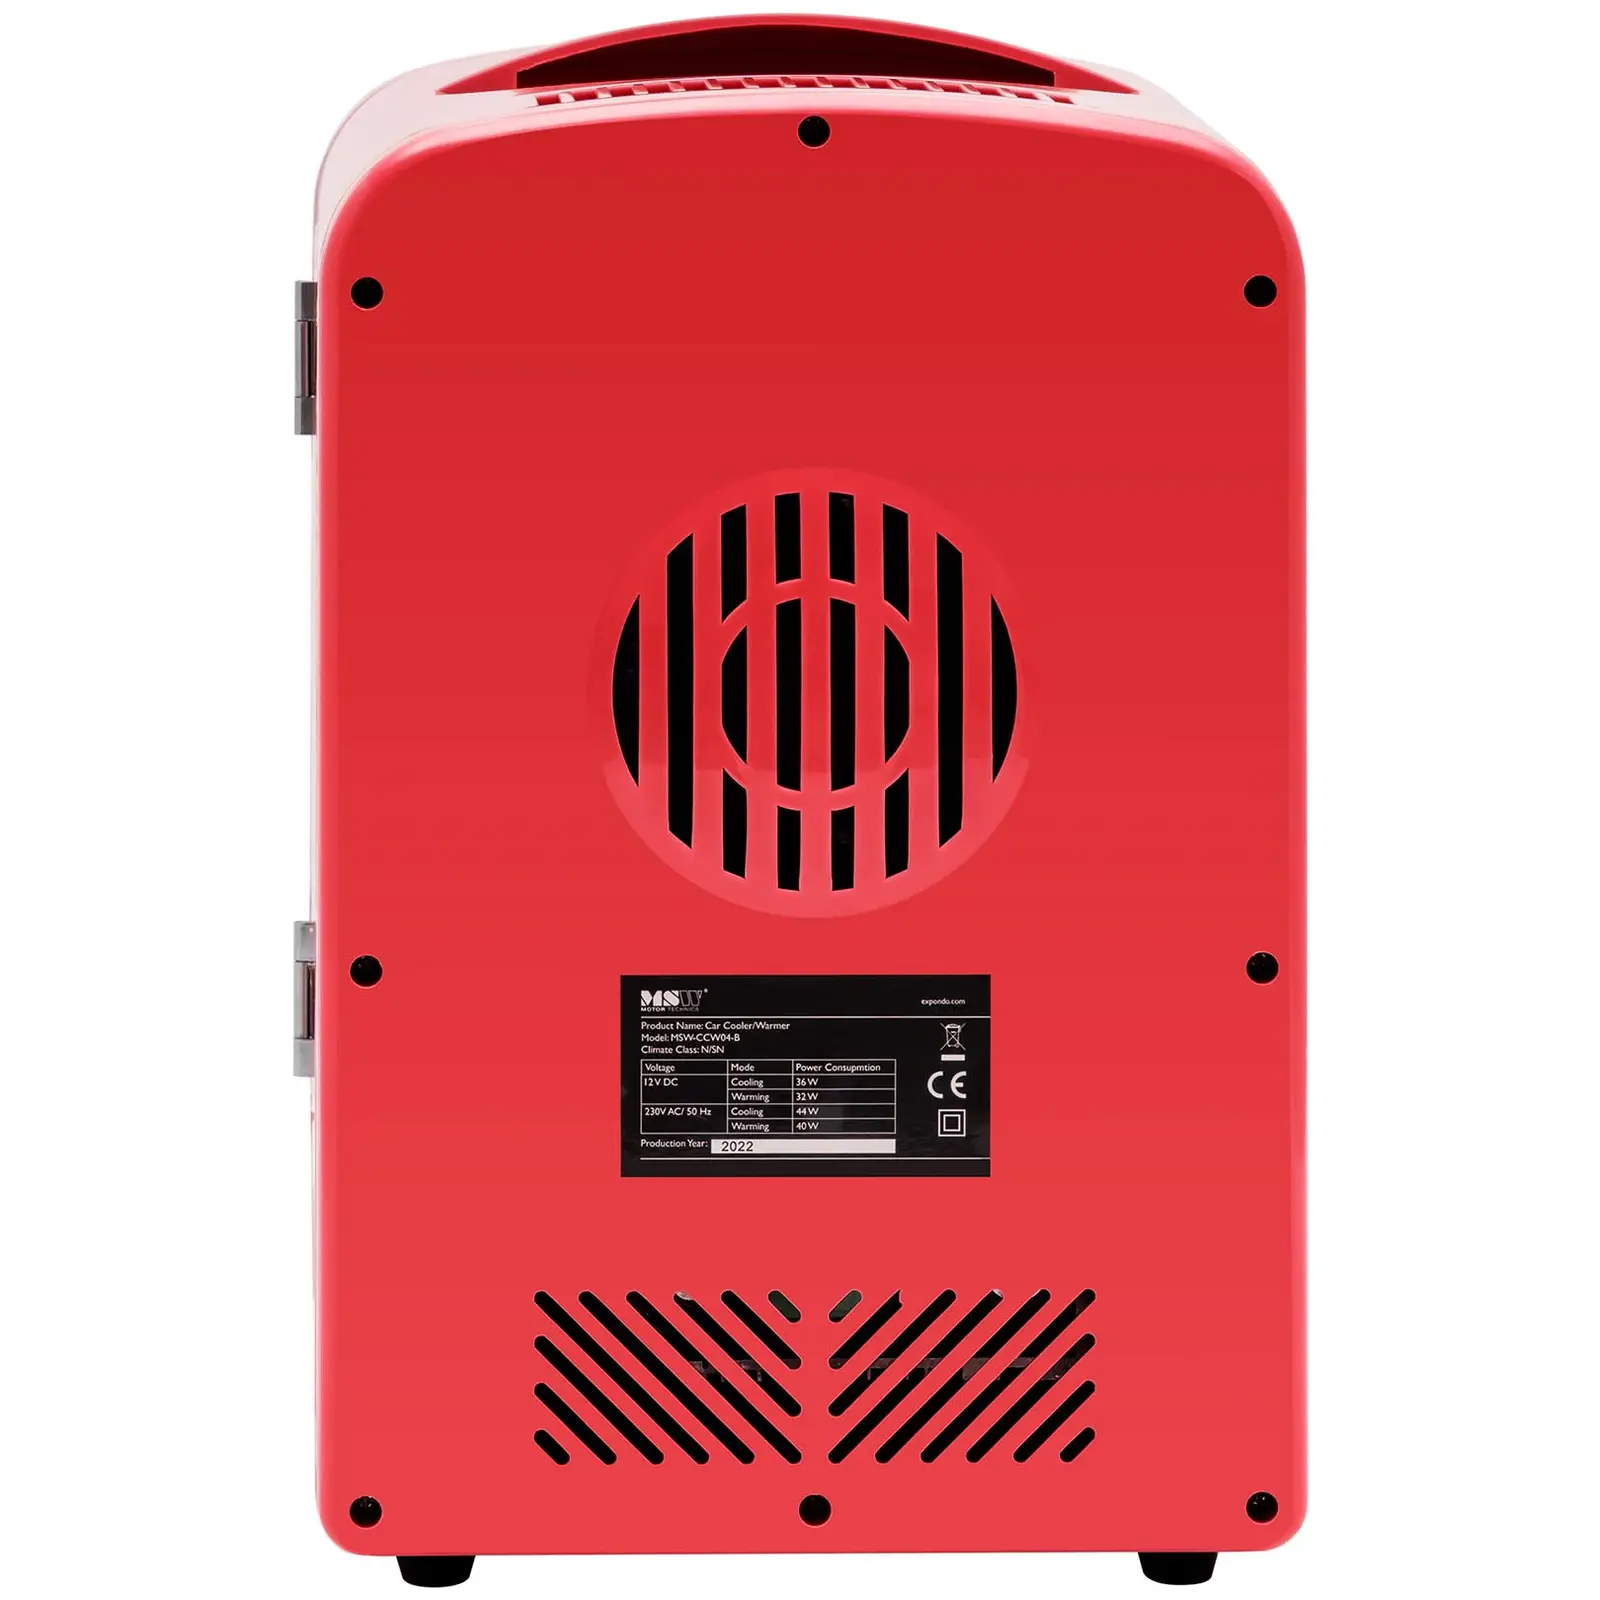 Mini chladnička 12 V / 230 V - zařízení 2 v 1 s funkcí ohřevu - 4 l - červená